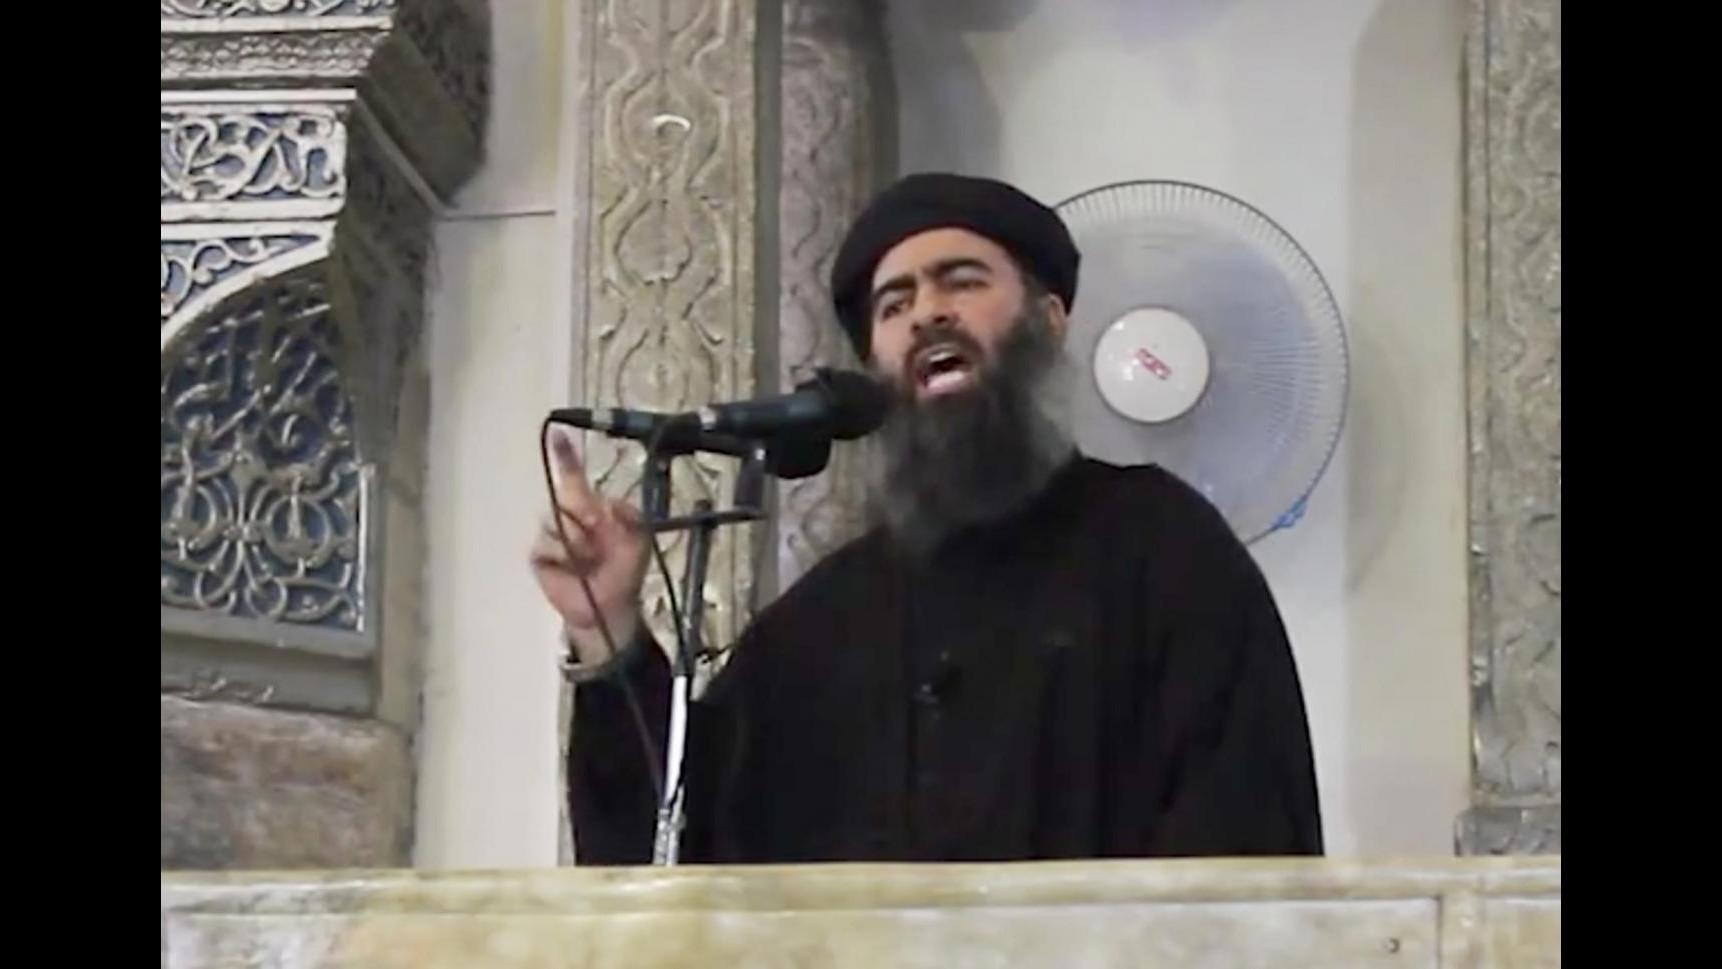 Isil, Abu Bakr al-Baghdadi: Cominciamo a coniare monete nostra valuta